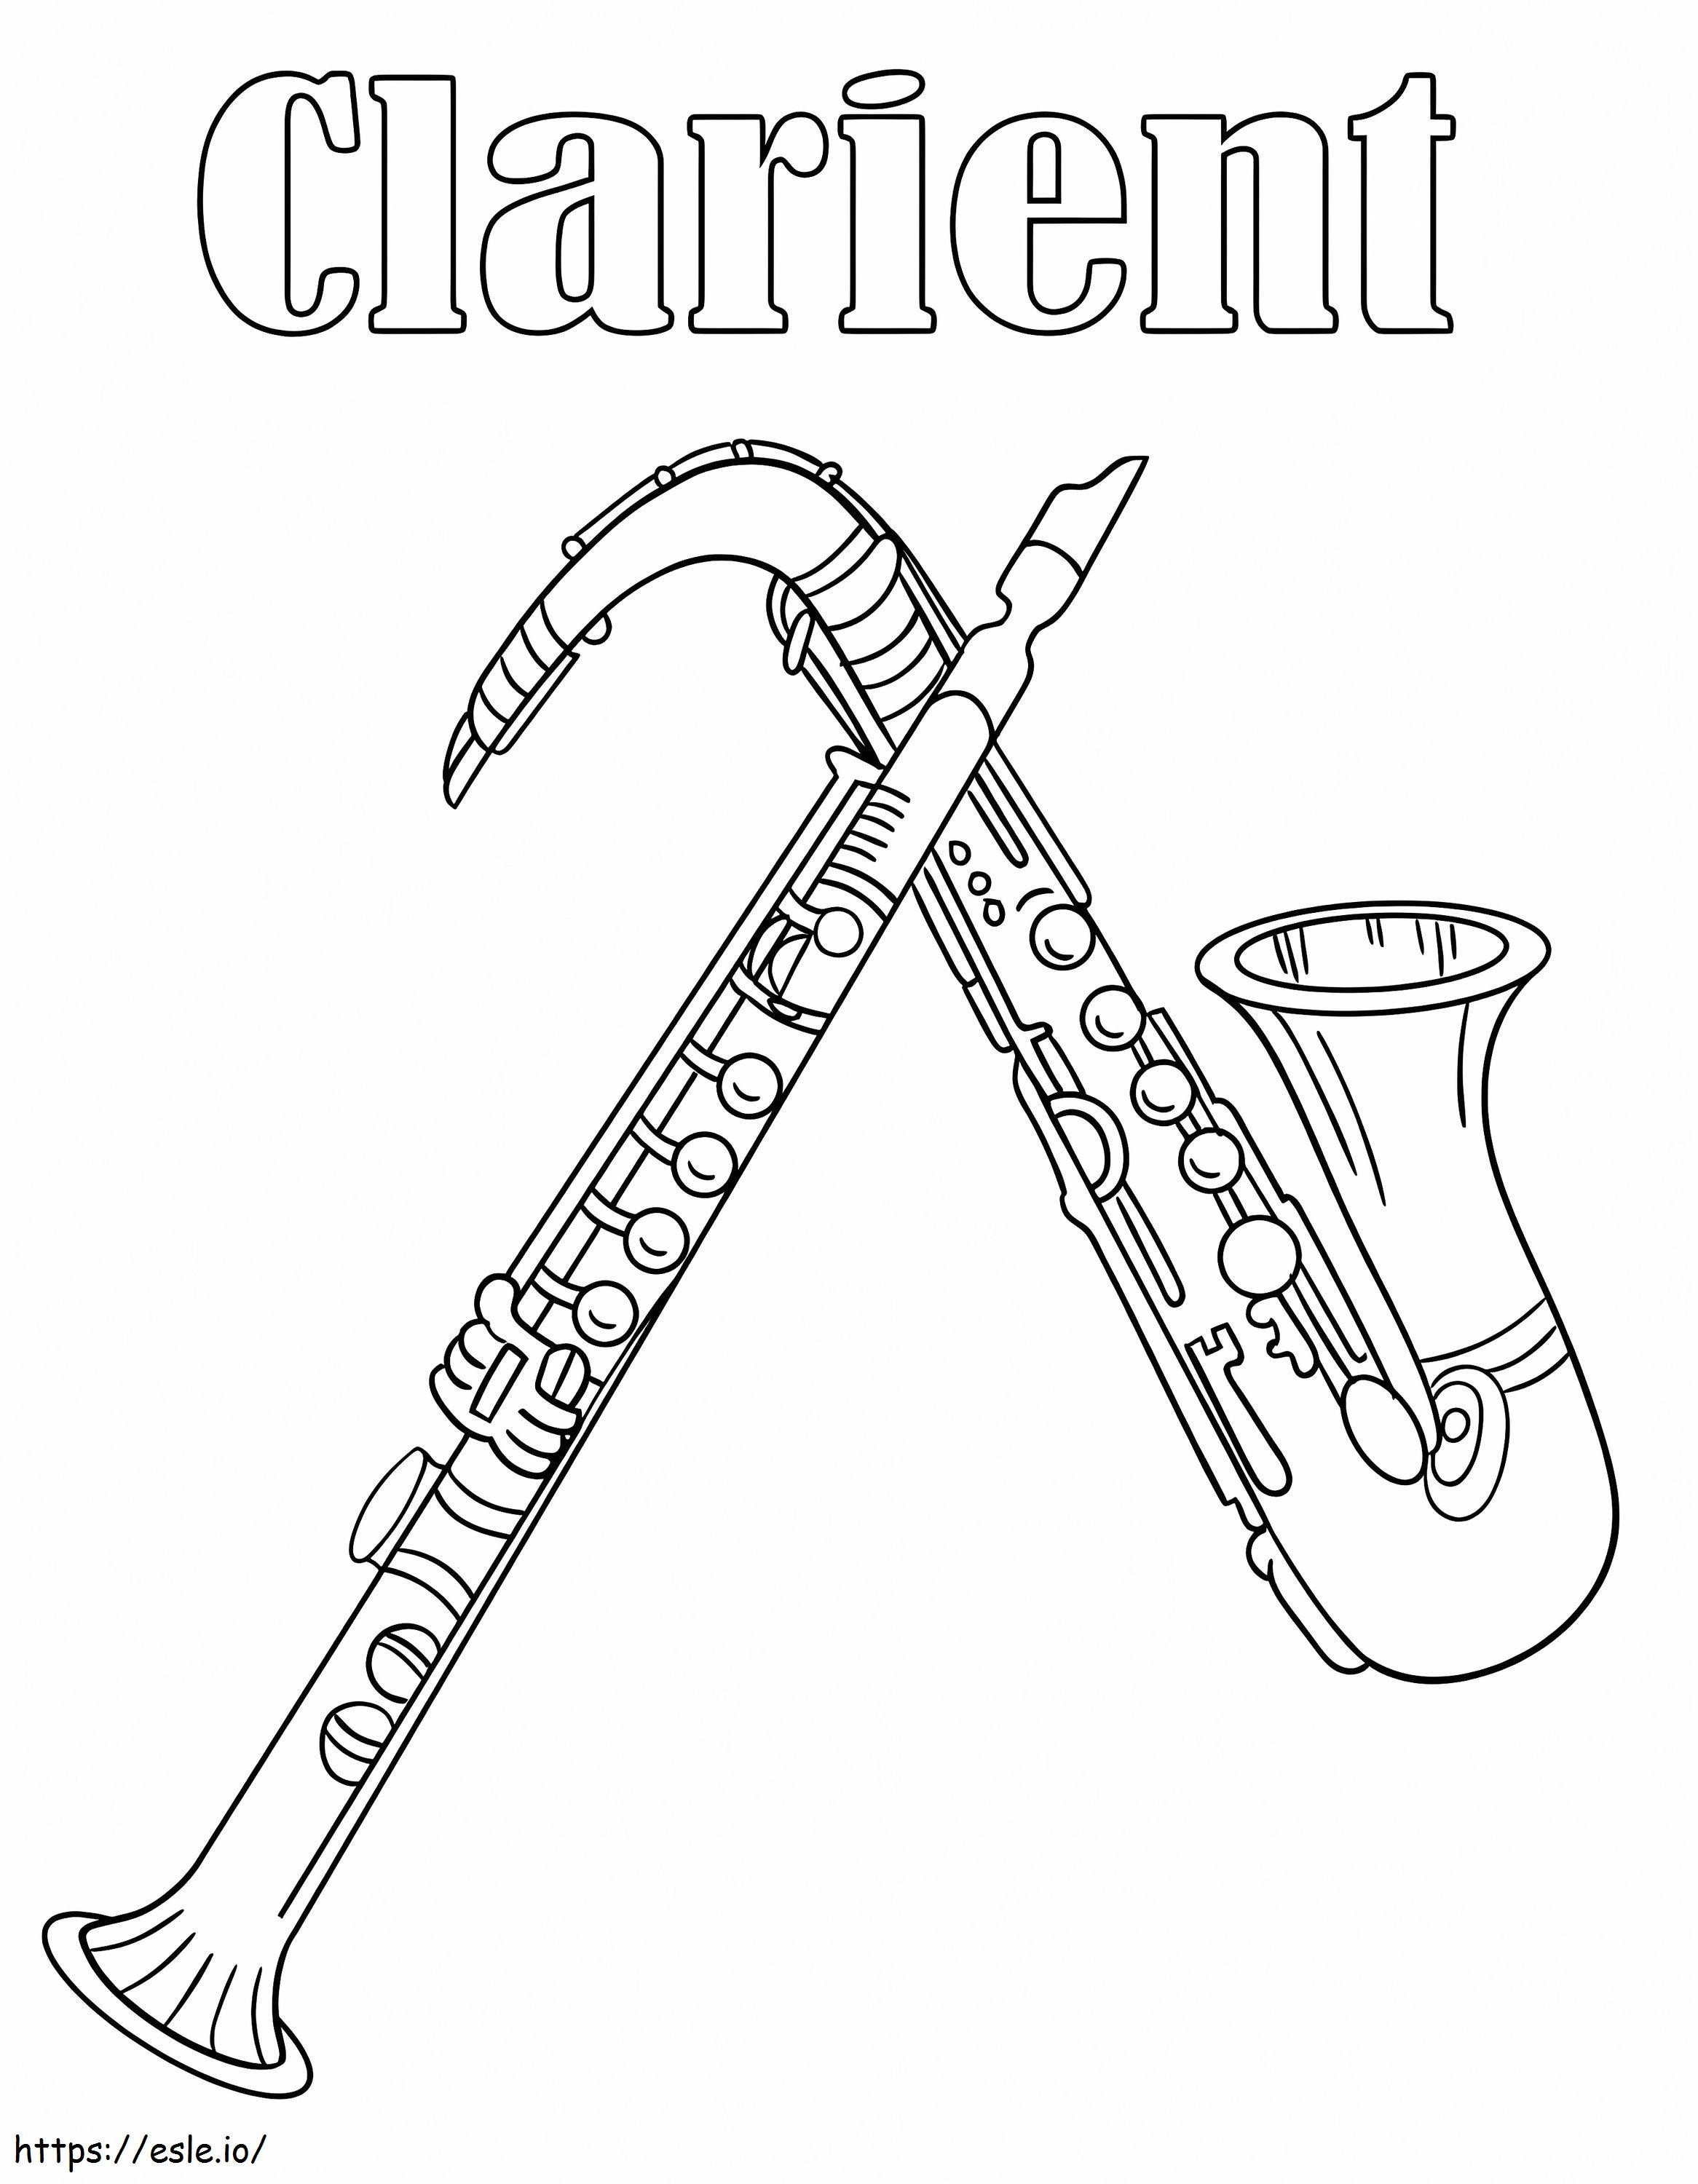 Klarinette und Saxophon ausmalbilder